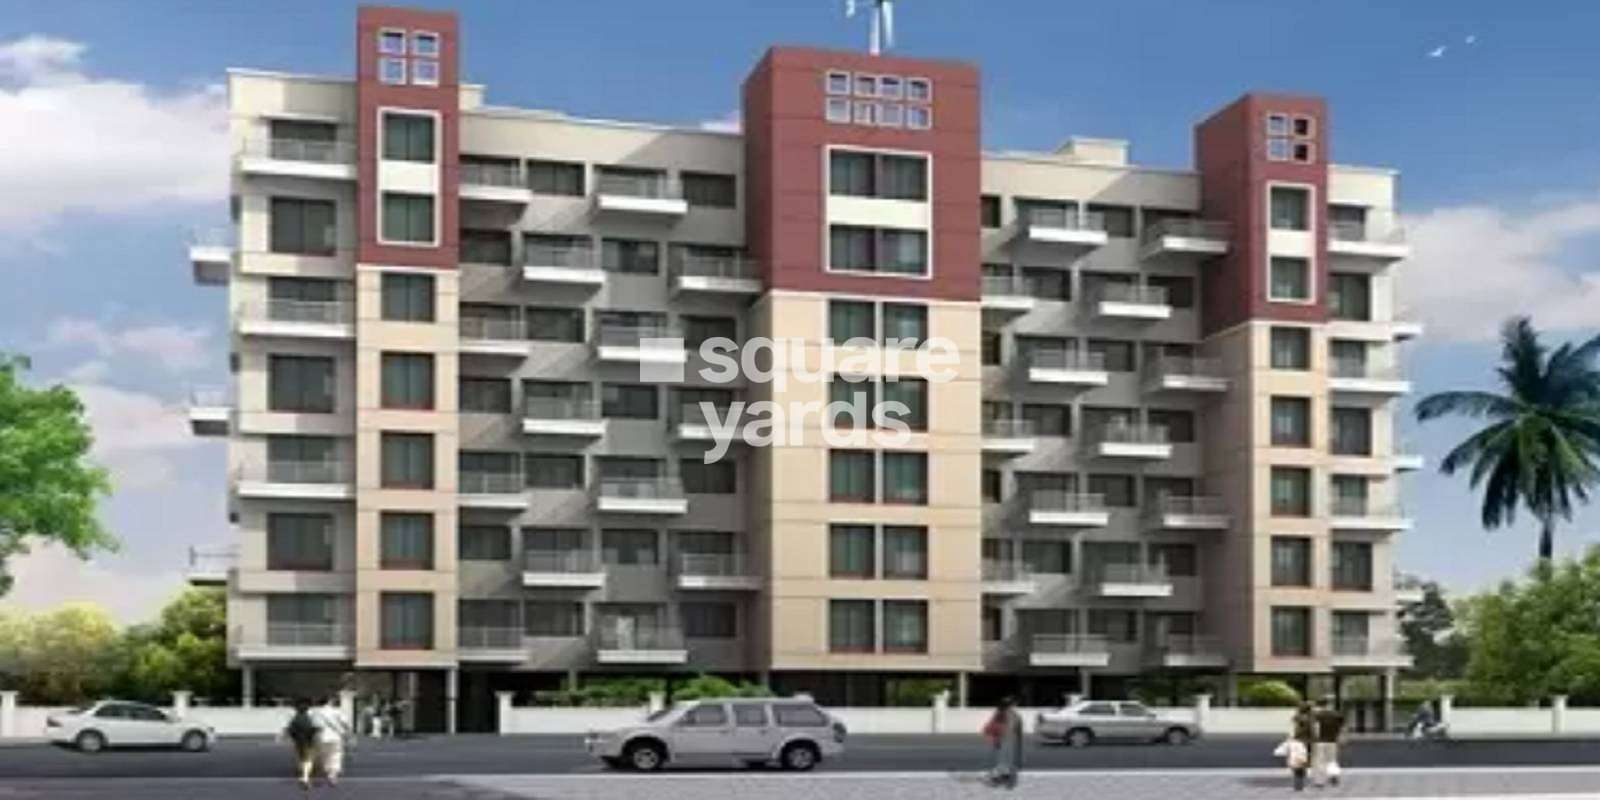 Sarovar Trailokya Apartments Cover Image